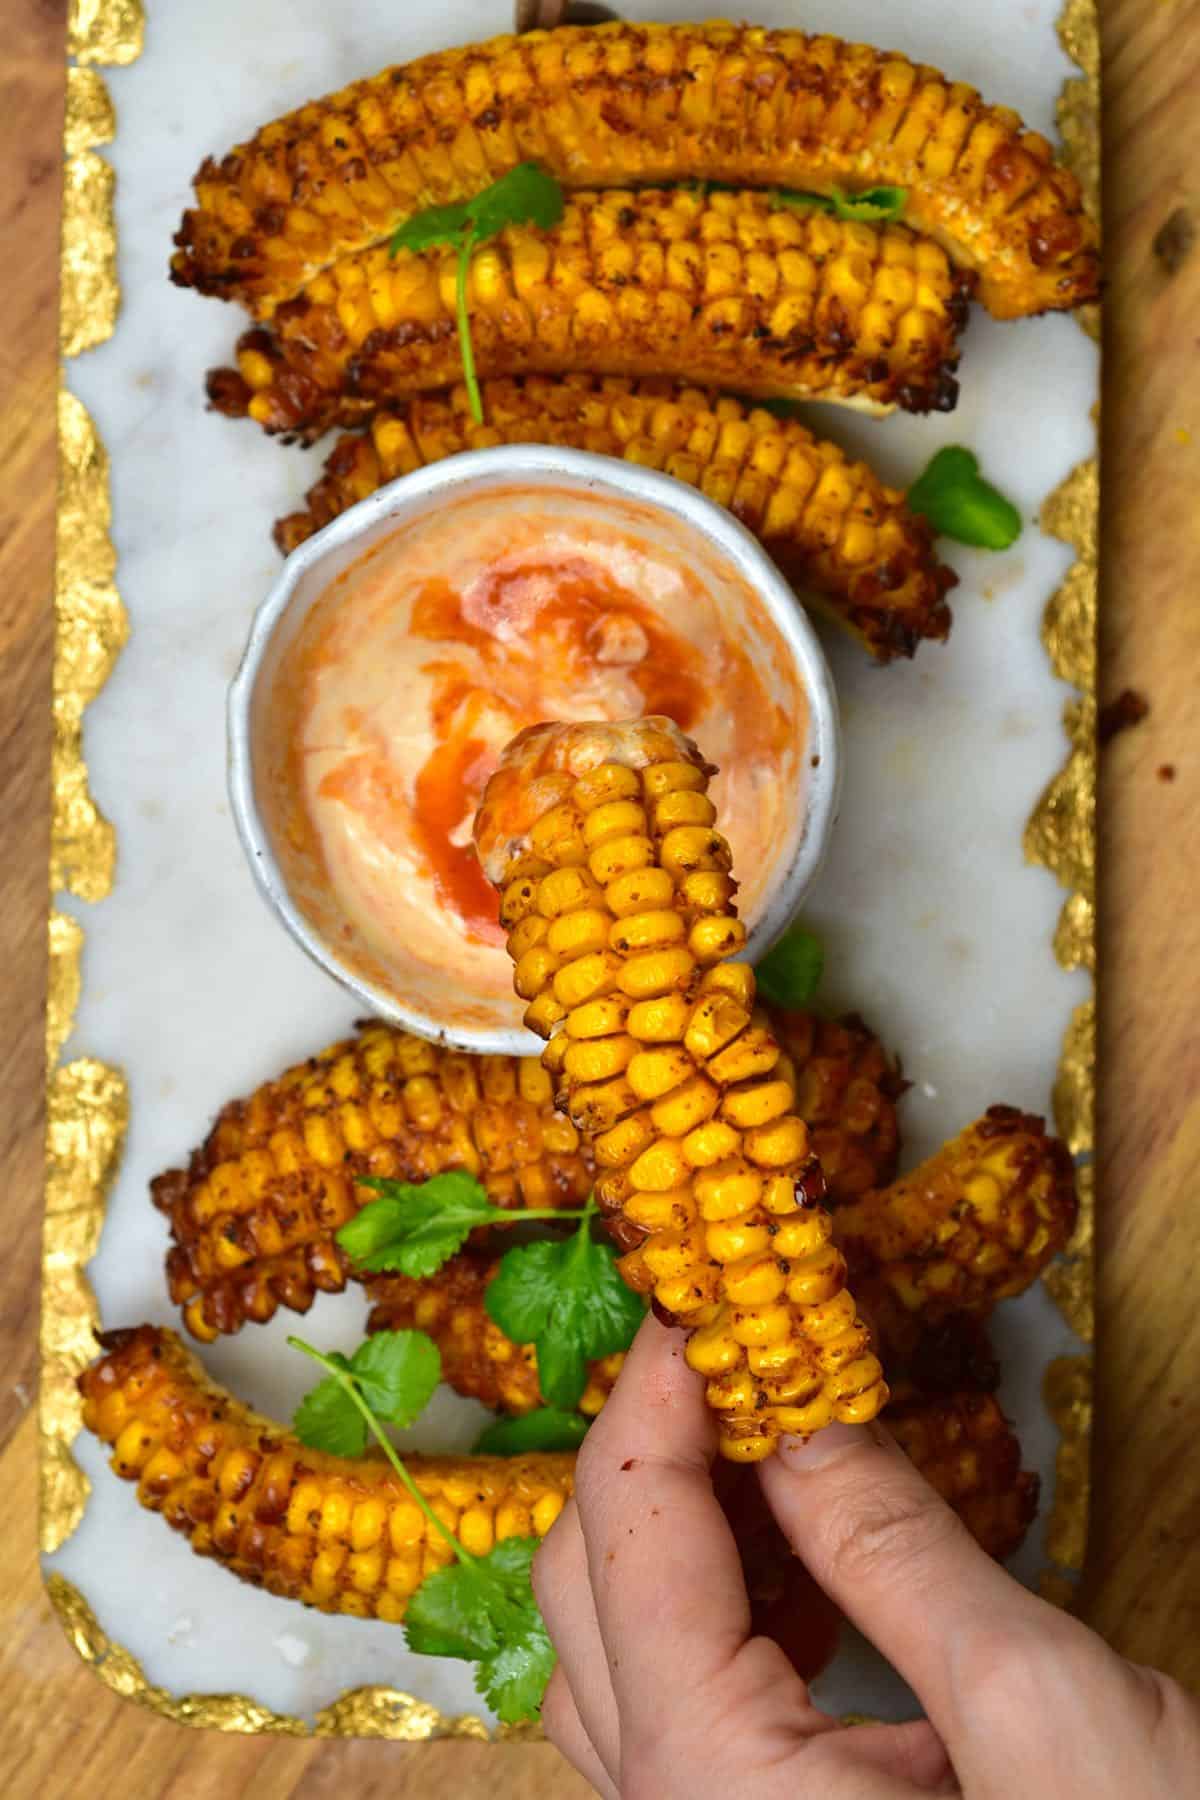 Dipping corn rib in chili mayo